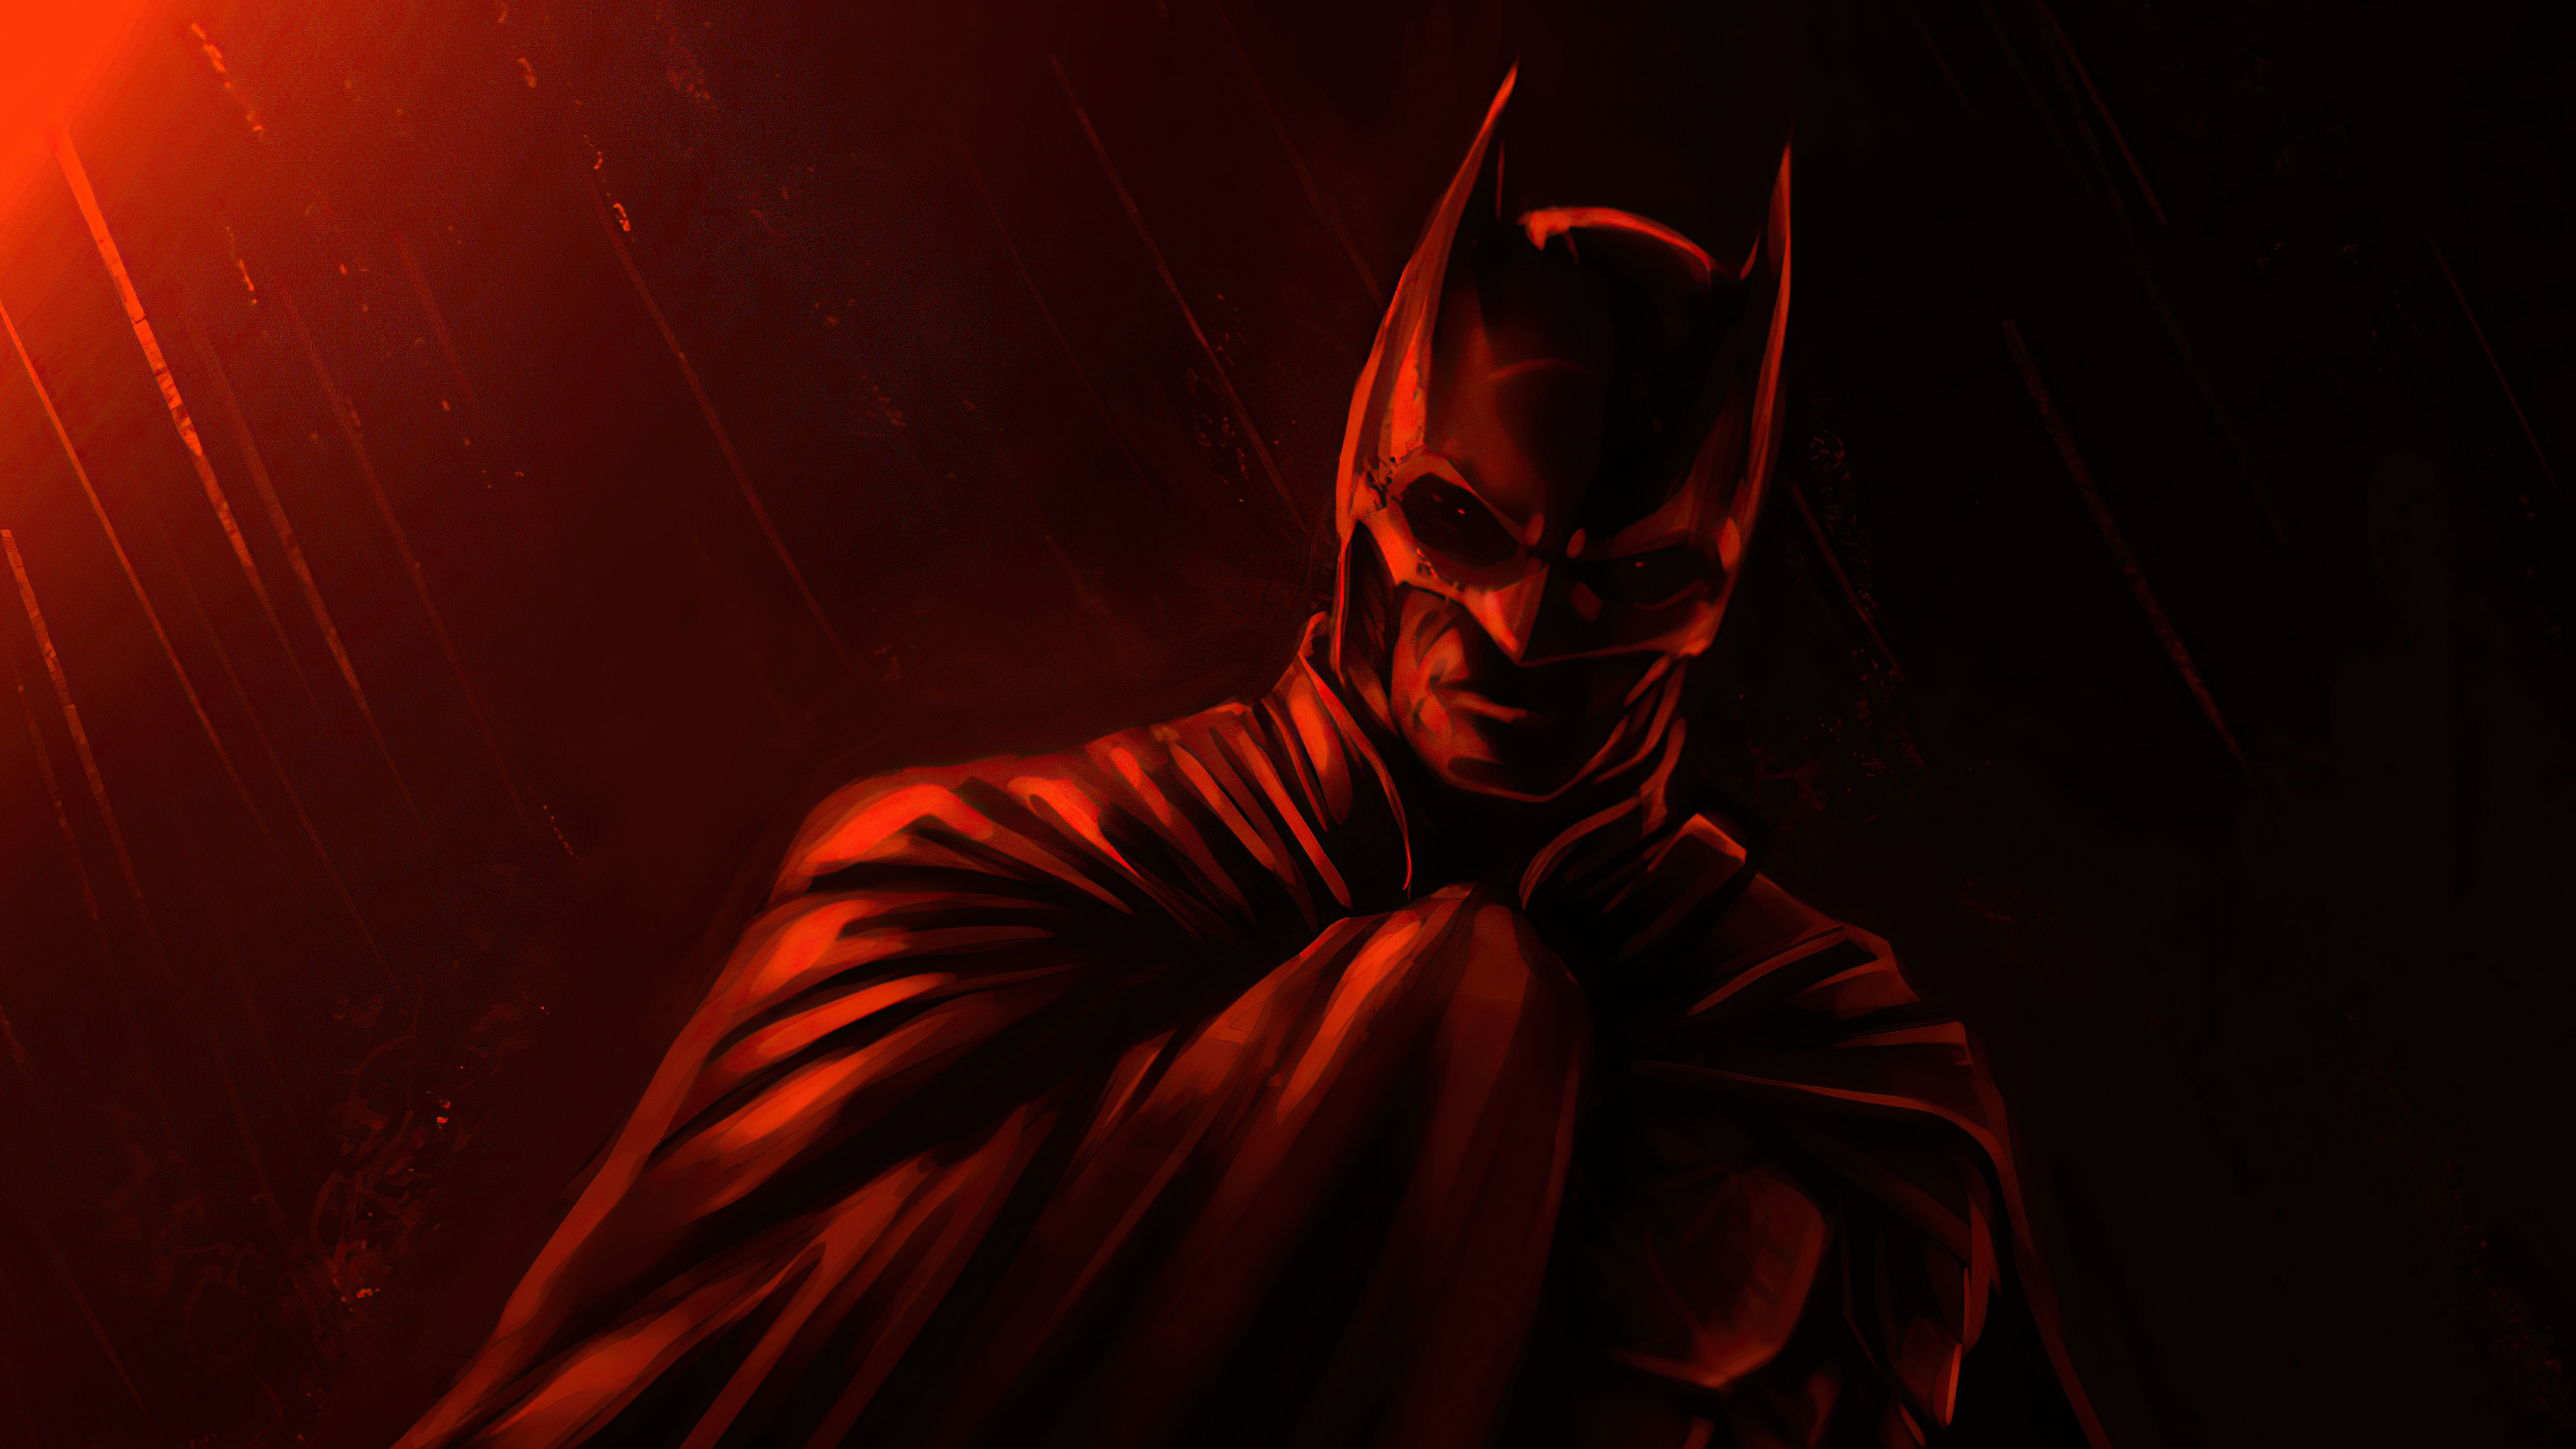 The Batman 8k Ultra HD Wallpaper by Daniele Ariuolo